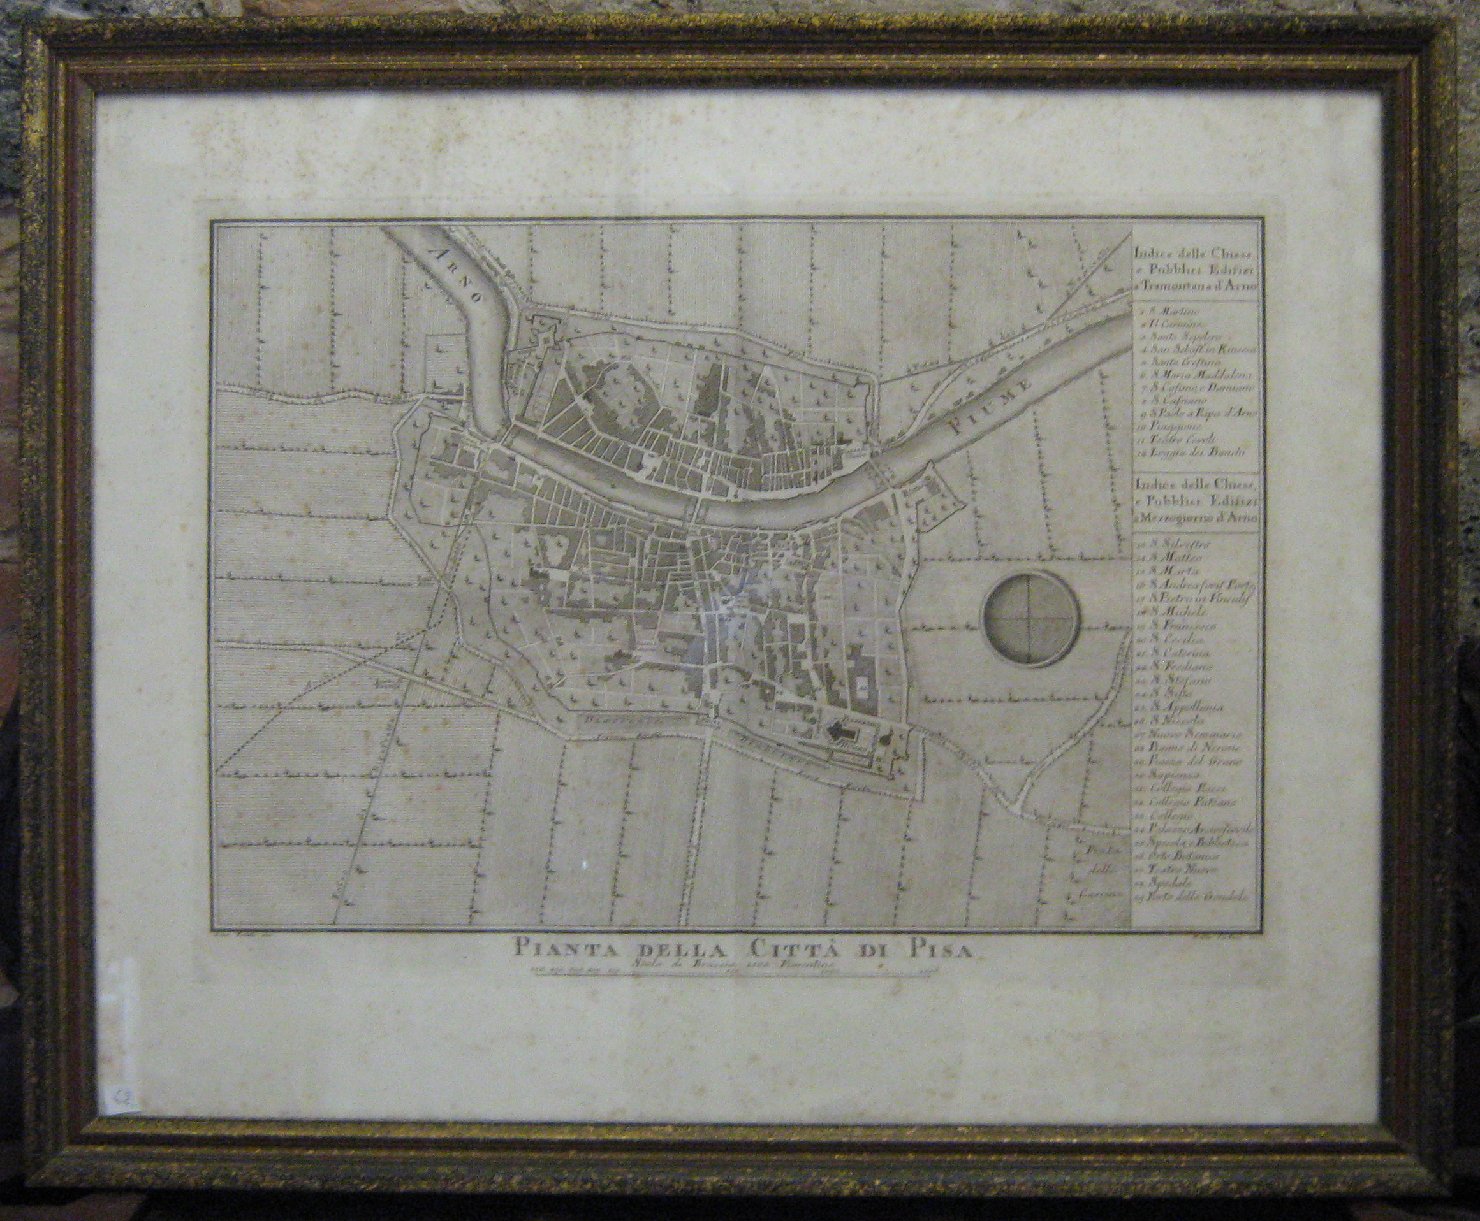 Pianta della Cittï¿½ di Pisa, geografia (stampa, frammento) di Puliti Giuseppe, Carboni Matteo (inizio sec. XIX)